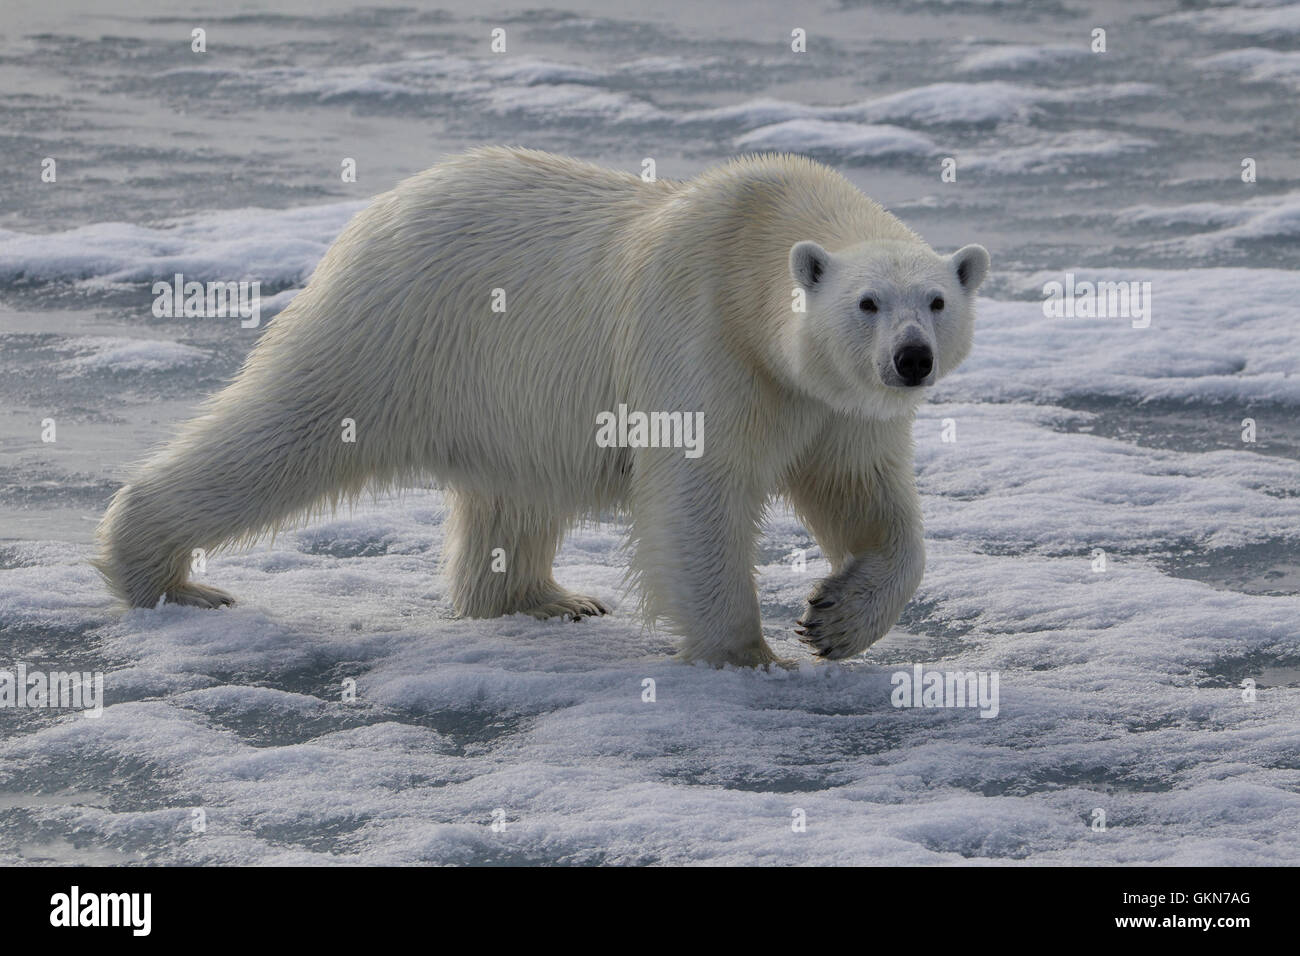 L'ours blanc, Ursus maritimus, promenades à travers la glace, Svalbard, de l'Arctique. Banque D'Images